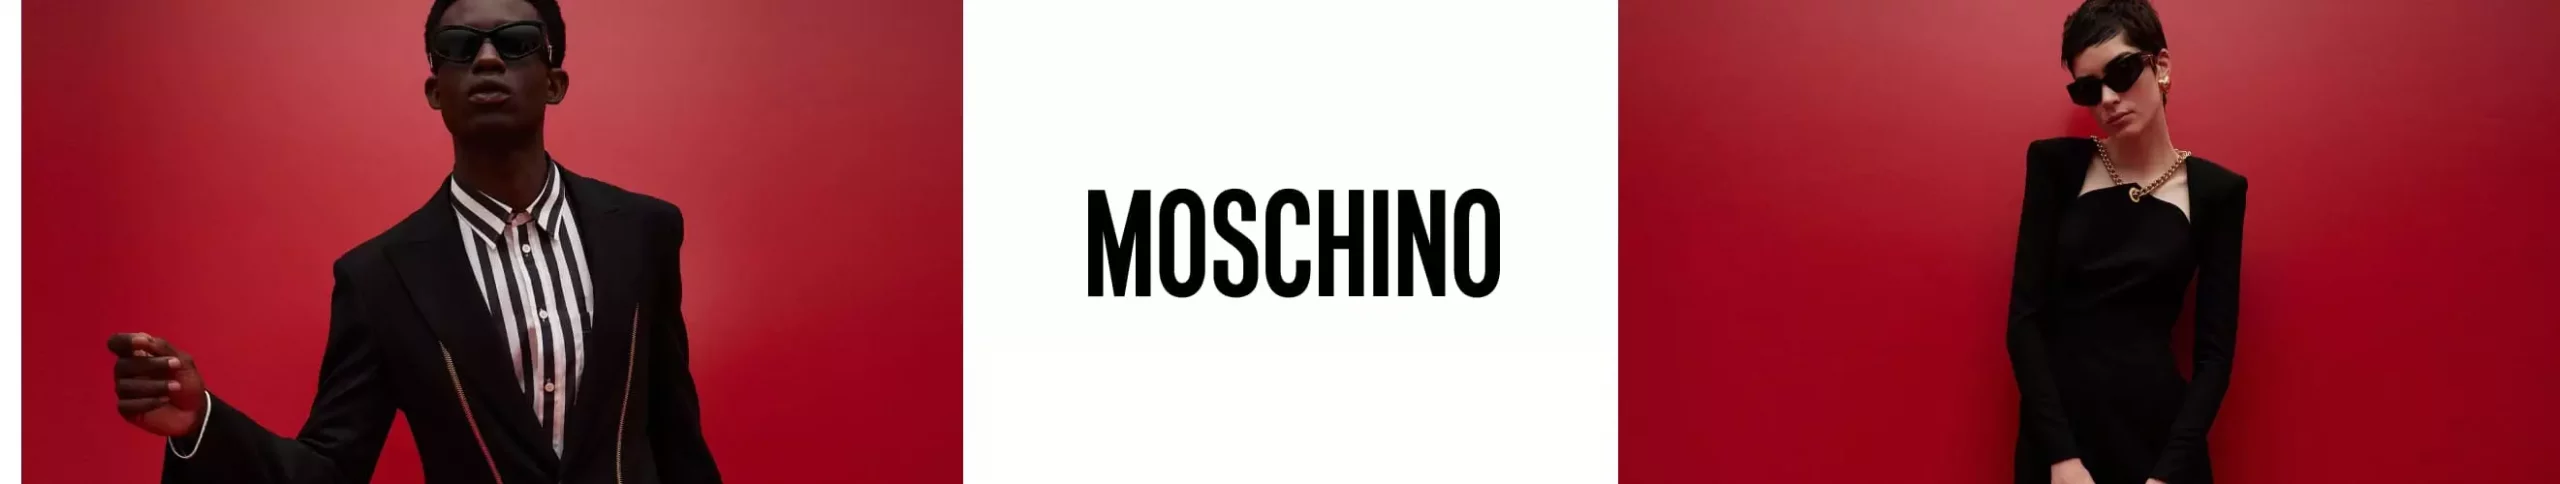 Moschino как идеальное дополнение для твоего образа